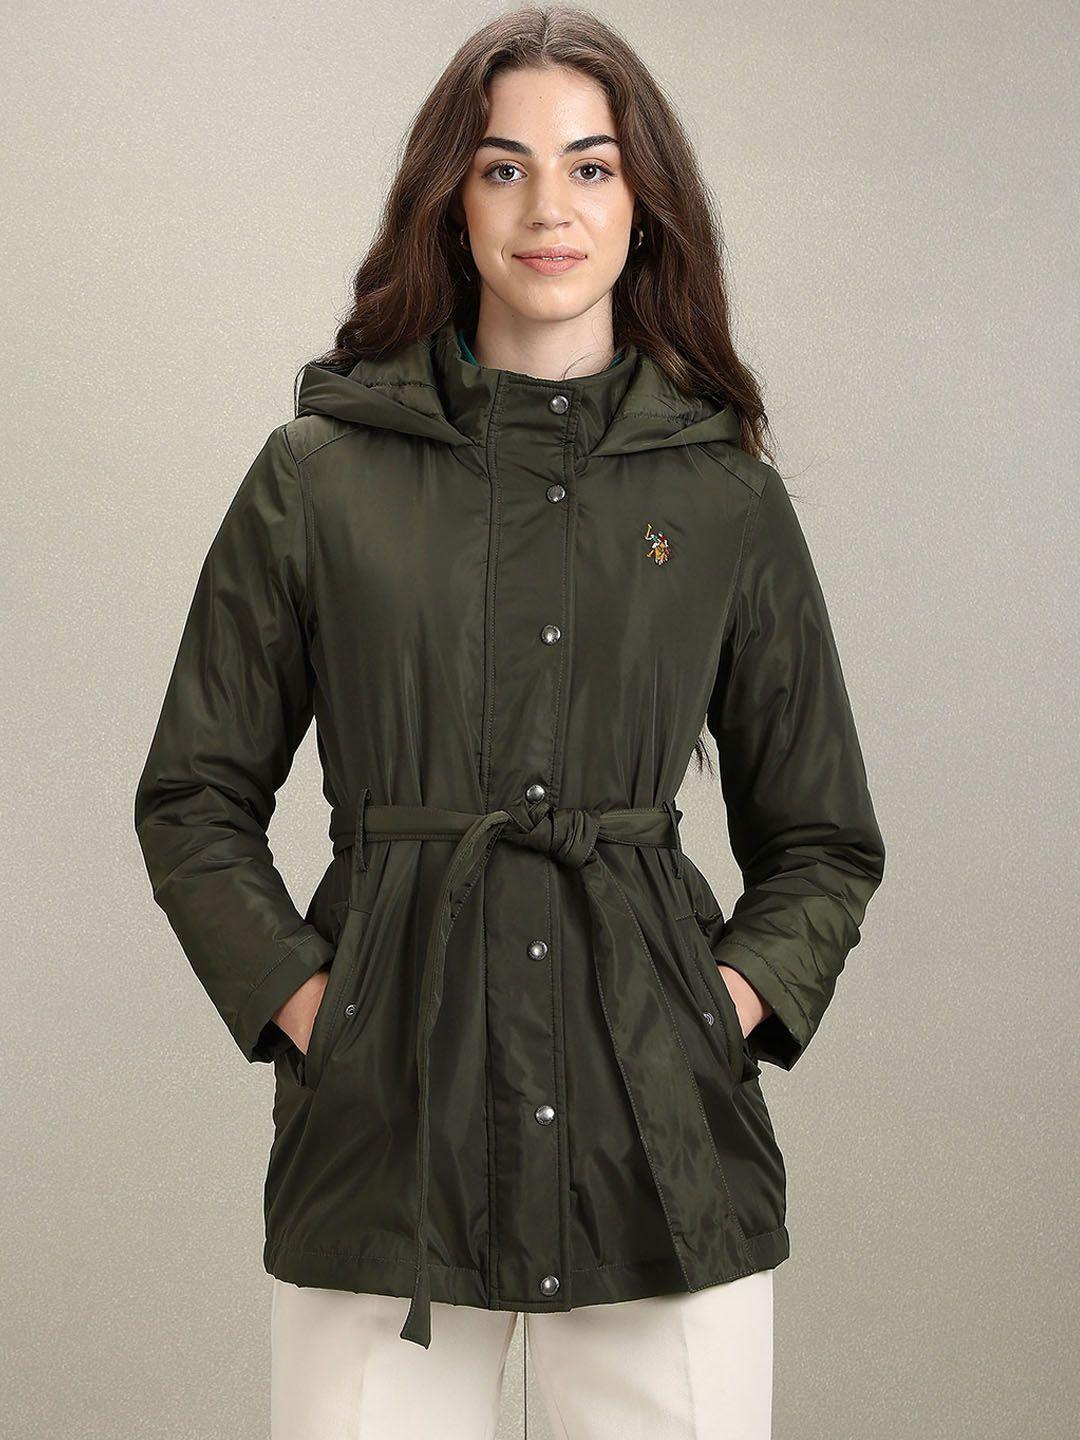 u.s. polo assn. women hooded longline parka jacket